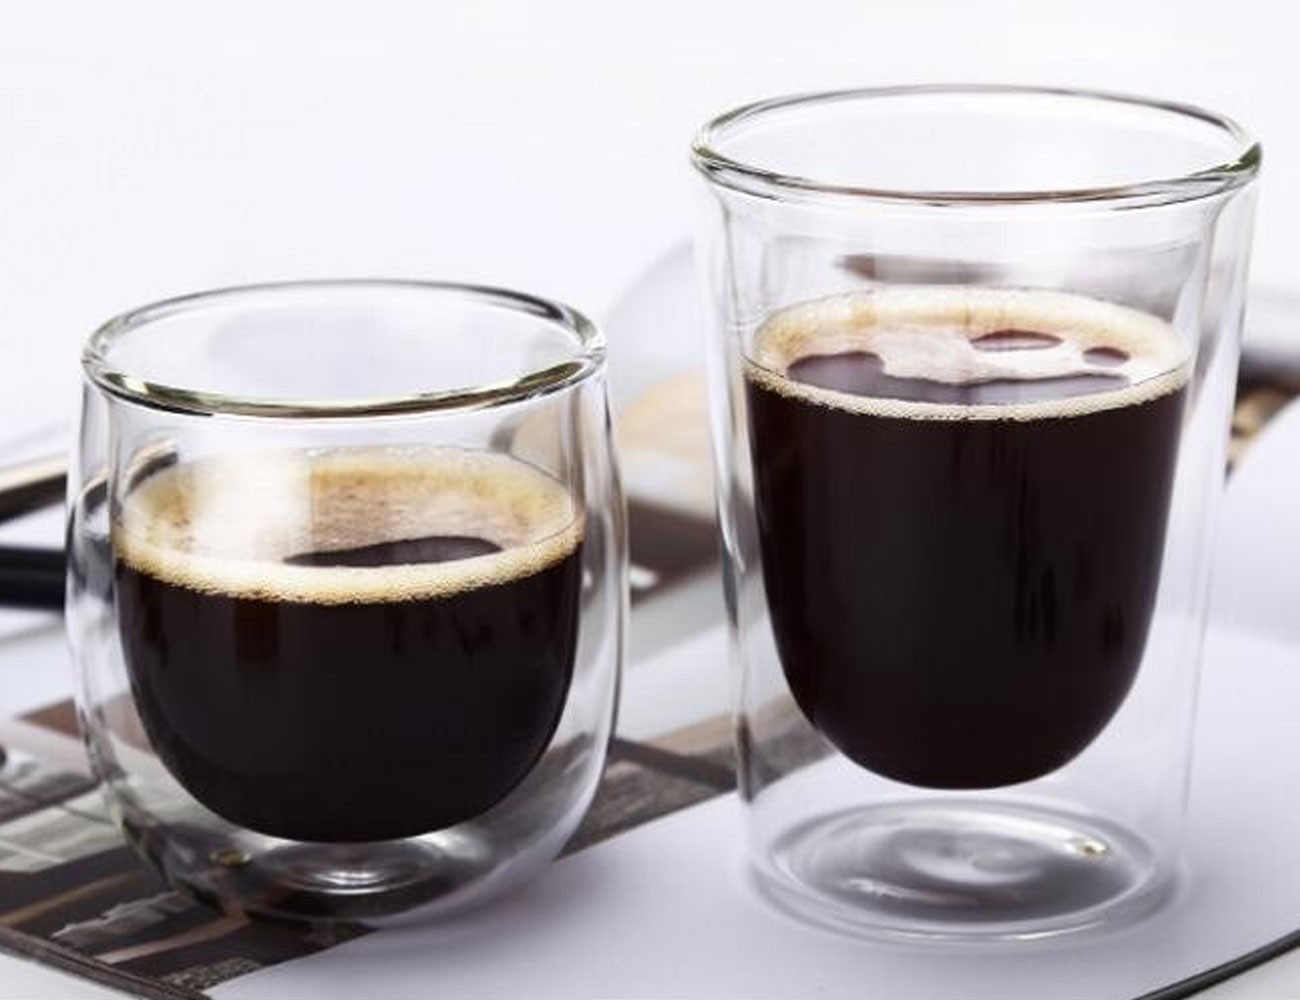 Фото кофе в стаканах